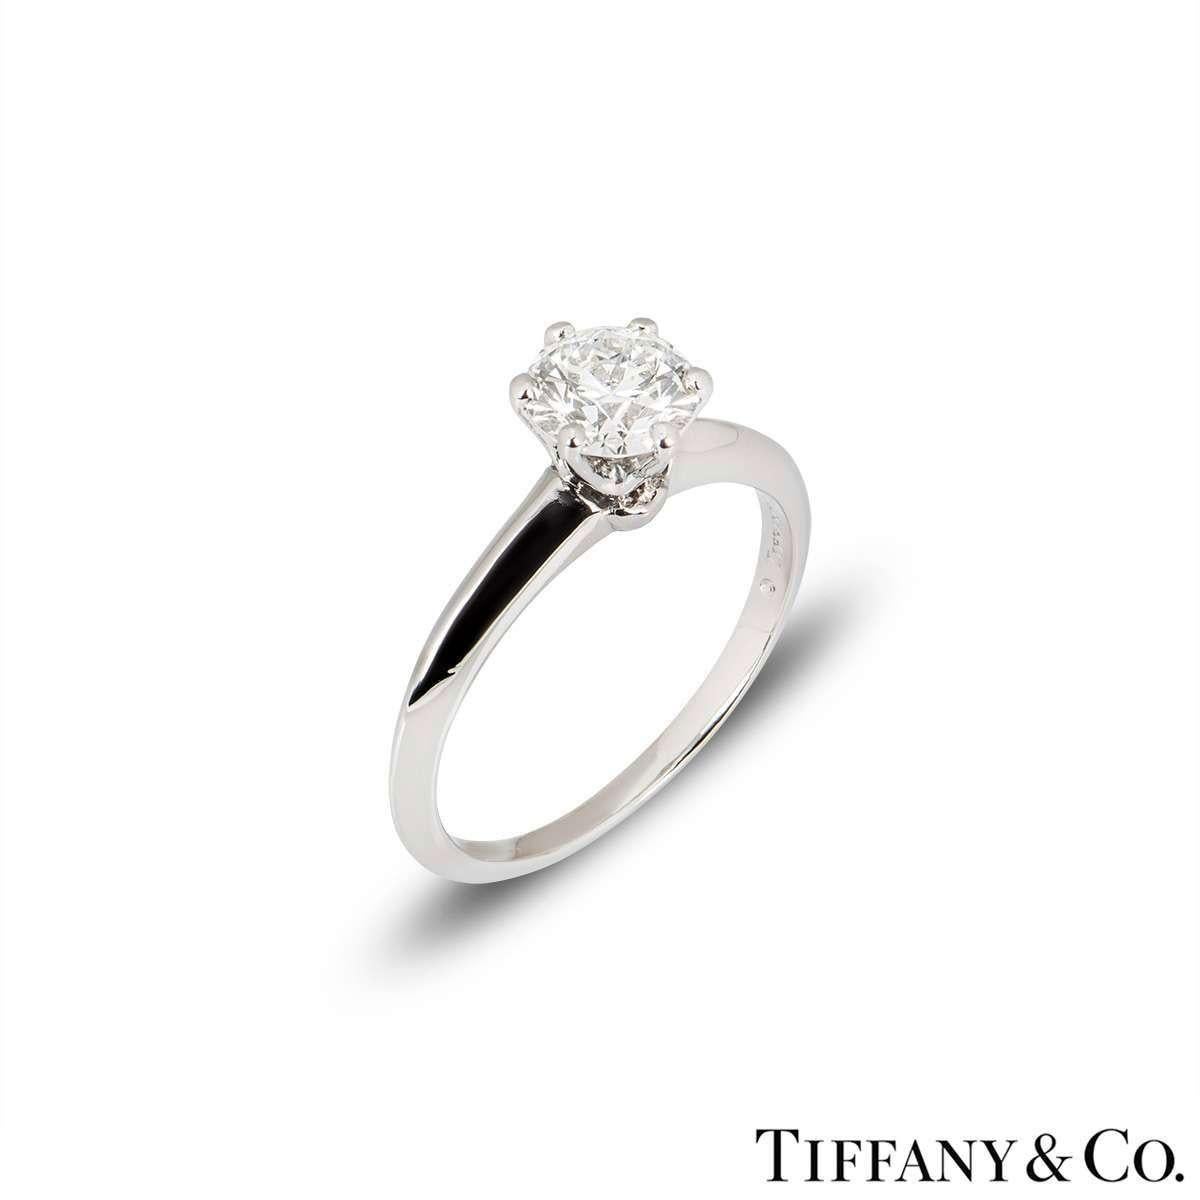 Ein schöner Platin-Diamantring von Tiffany & Co. aus der The Setting Collection. Der Ring besteht aus einem runden Diamanten im Brillantschliff in einer 6-Krallen-Fassung mit einem Gewicht von 1,05ct, Farbe G und Reinheit VS1. Der Ring hat ein